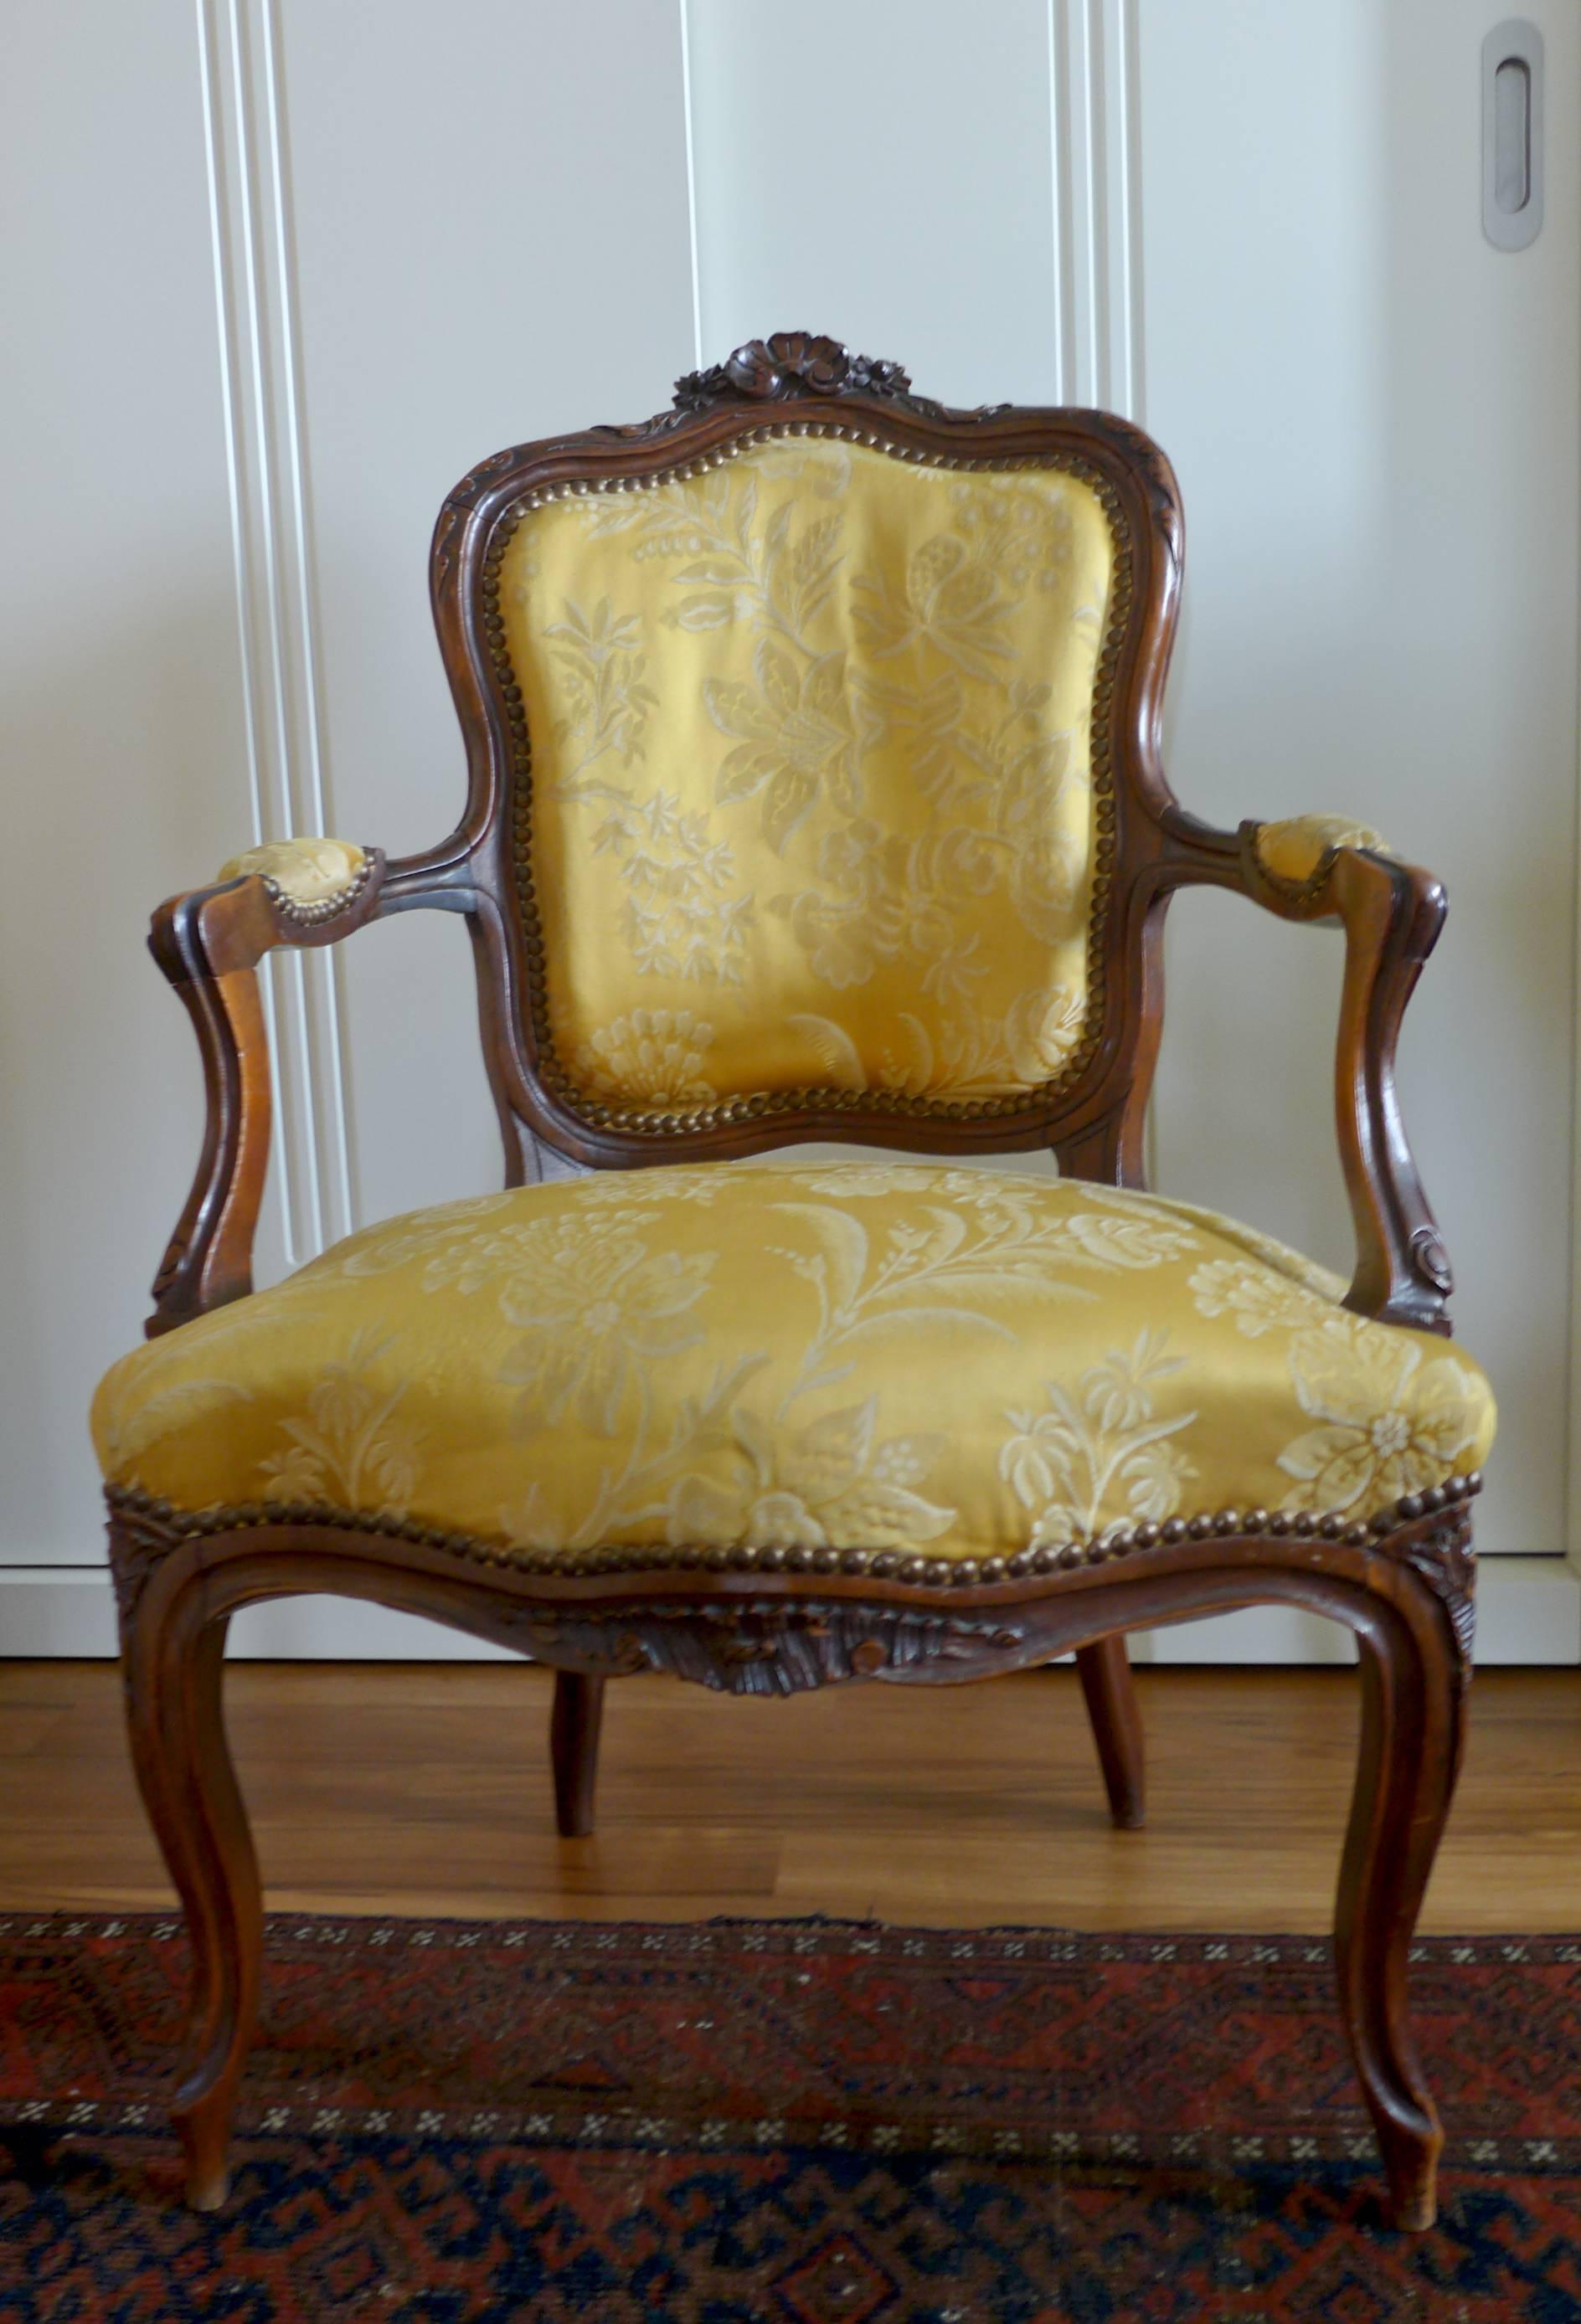 Ein offener Sessel aus französischem Nussbaum, sehr gute Qualität und Zustand, schöne geformte Rücken- und Armlehnen, Schnitzereien an den Rahmen, auf schönen Cabriole-Beinen stehend, neu in Goldsatin mit Blumendekoration,
um 1870.
   